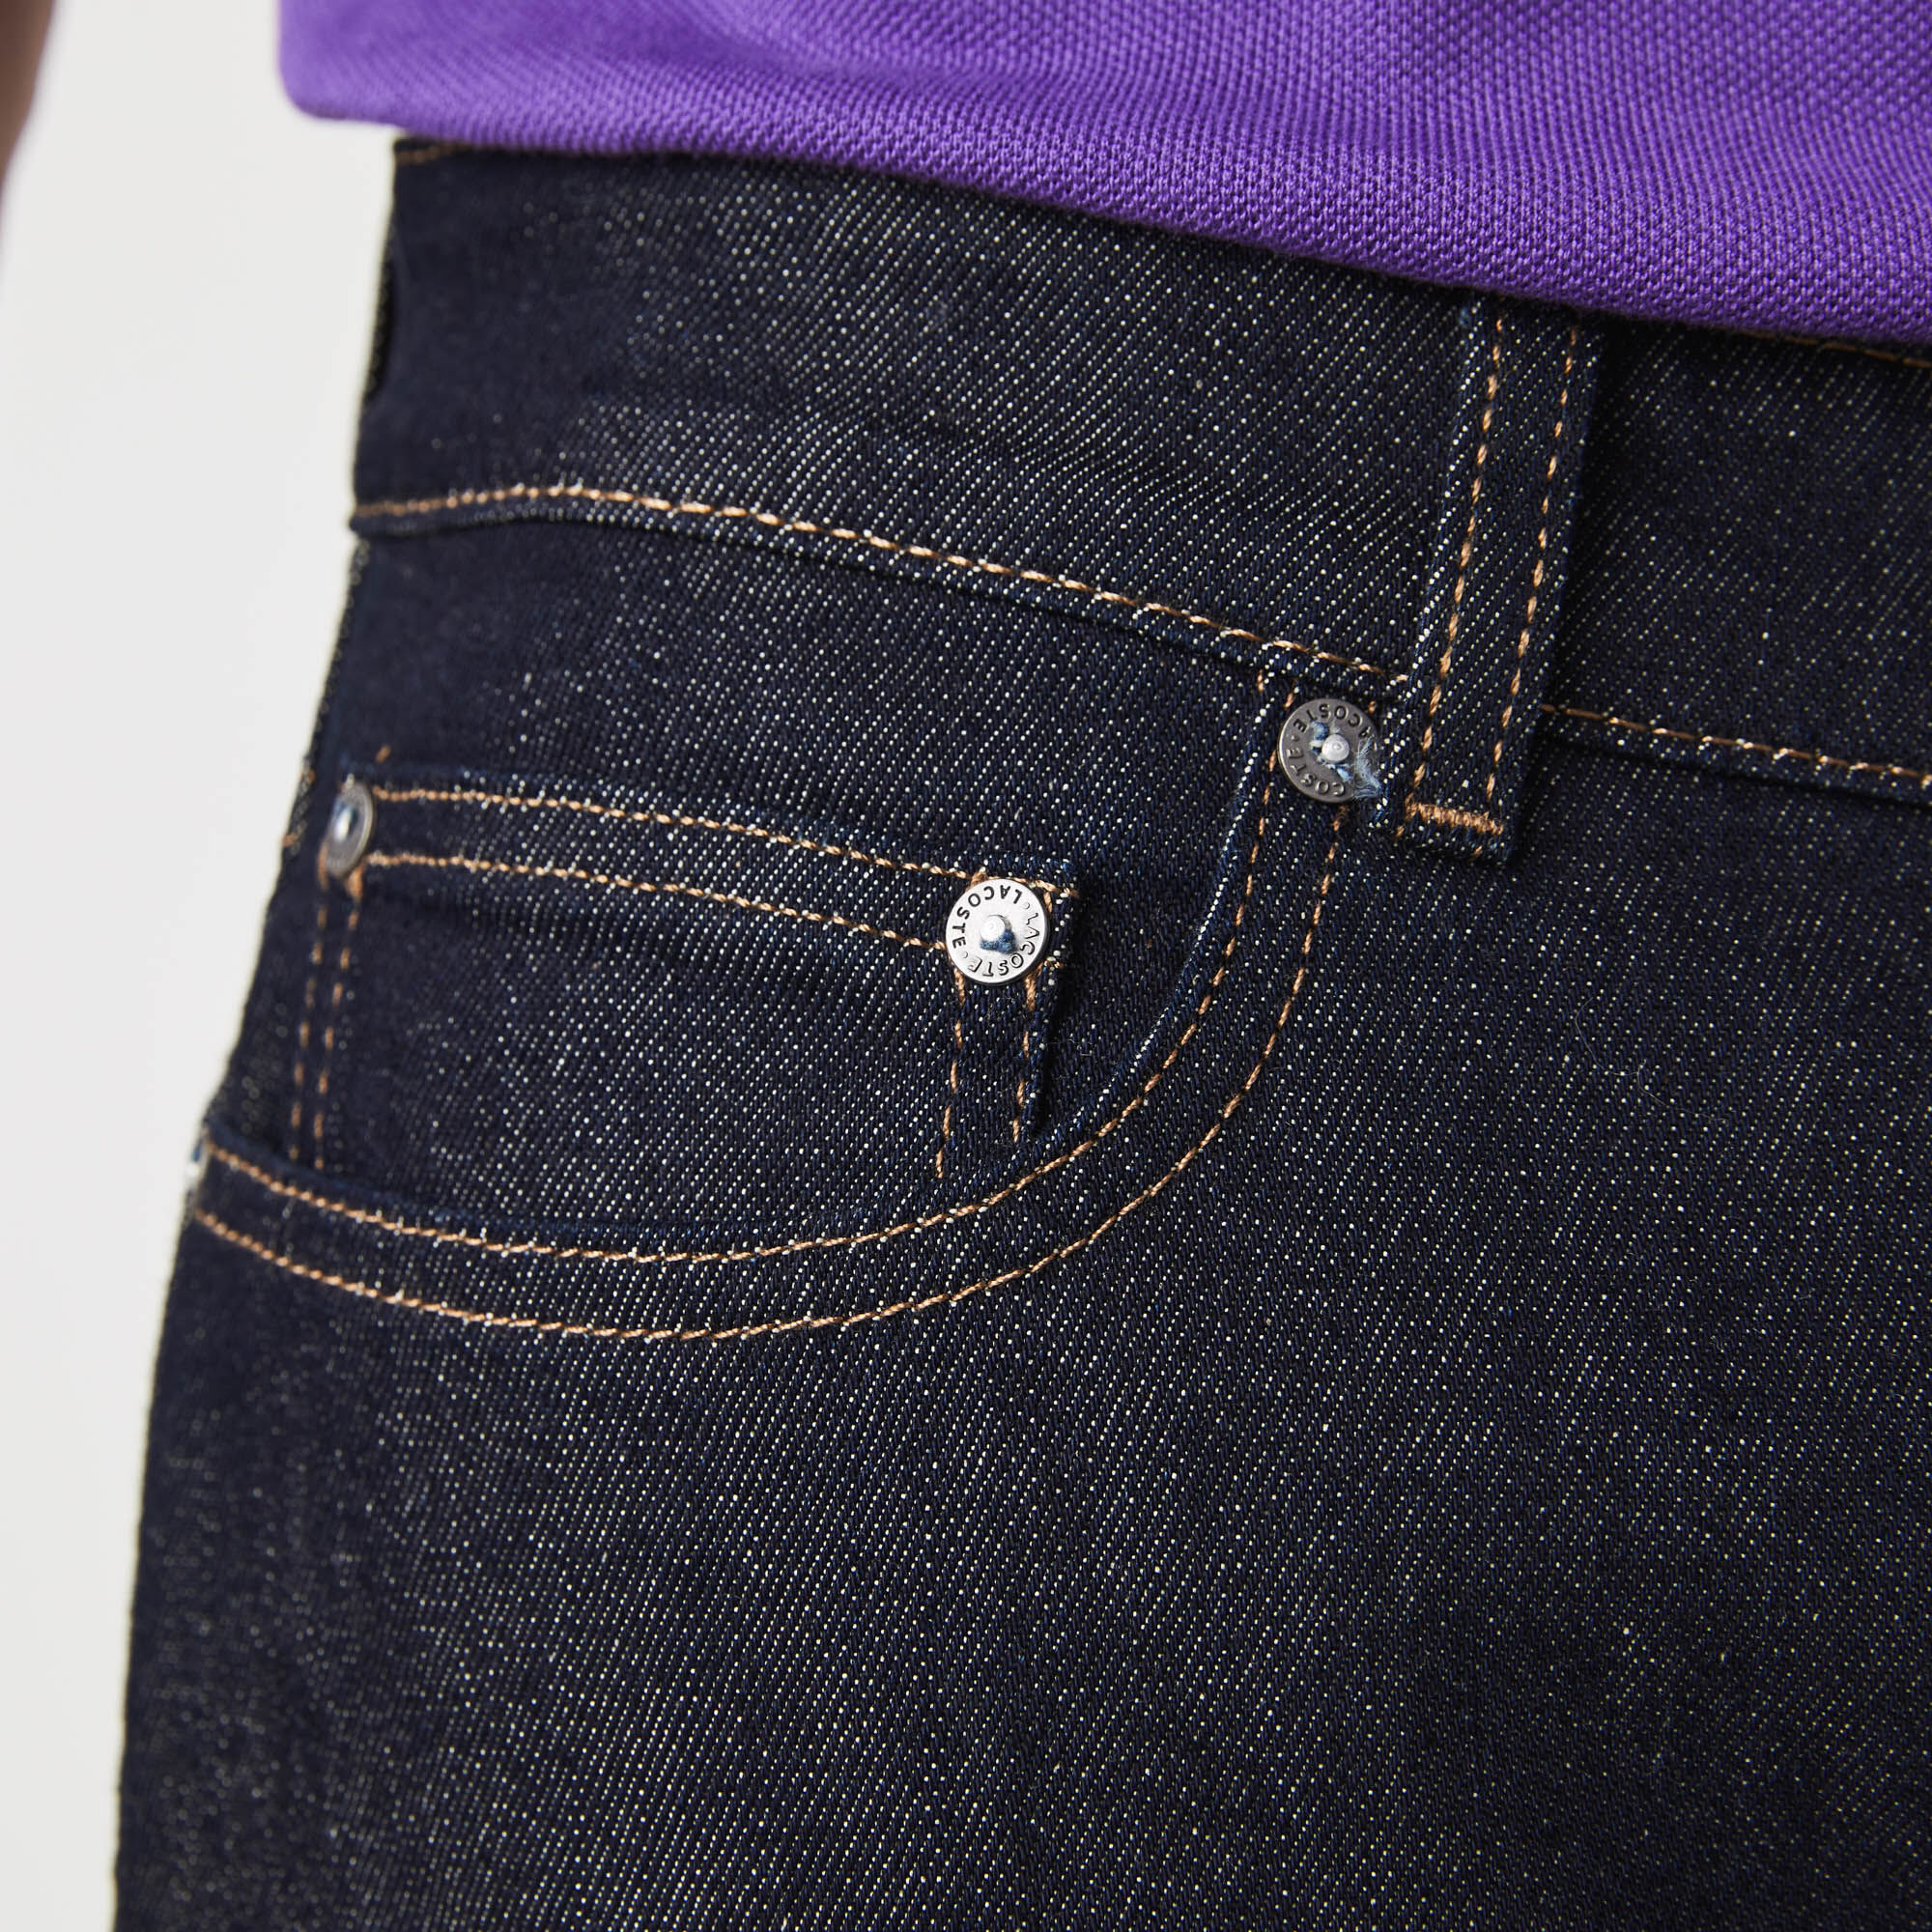 Men's Slim Fit Stretch Denim 5-Pocket Jeans